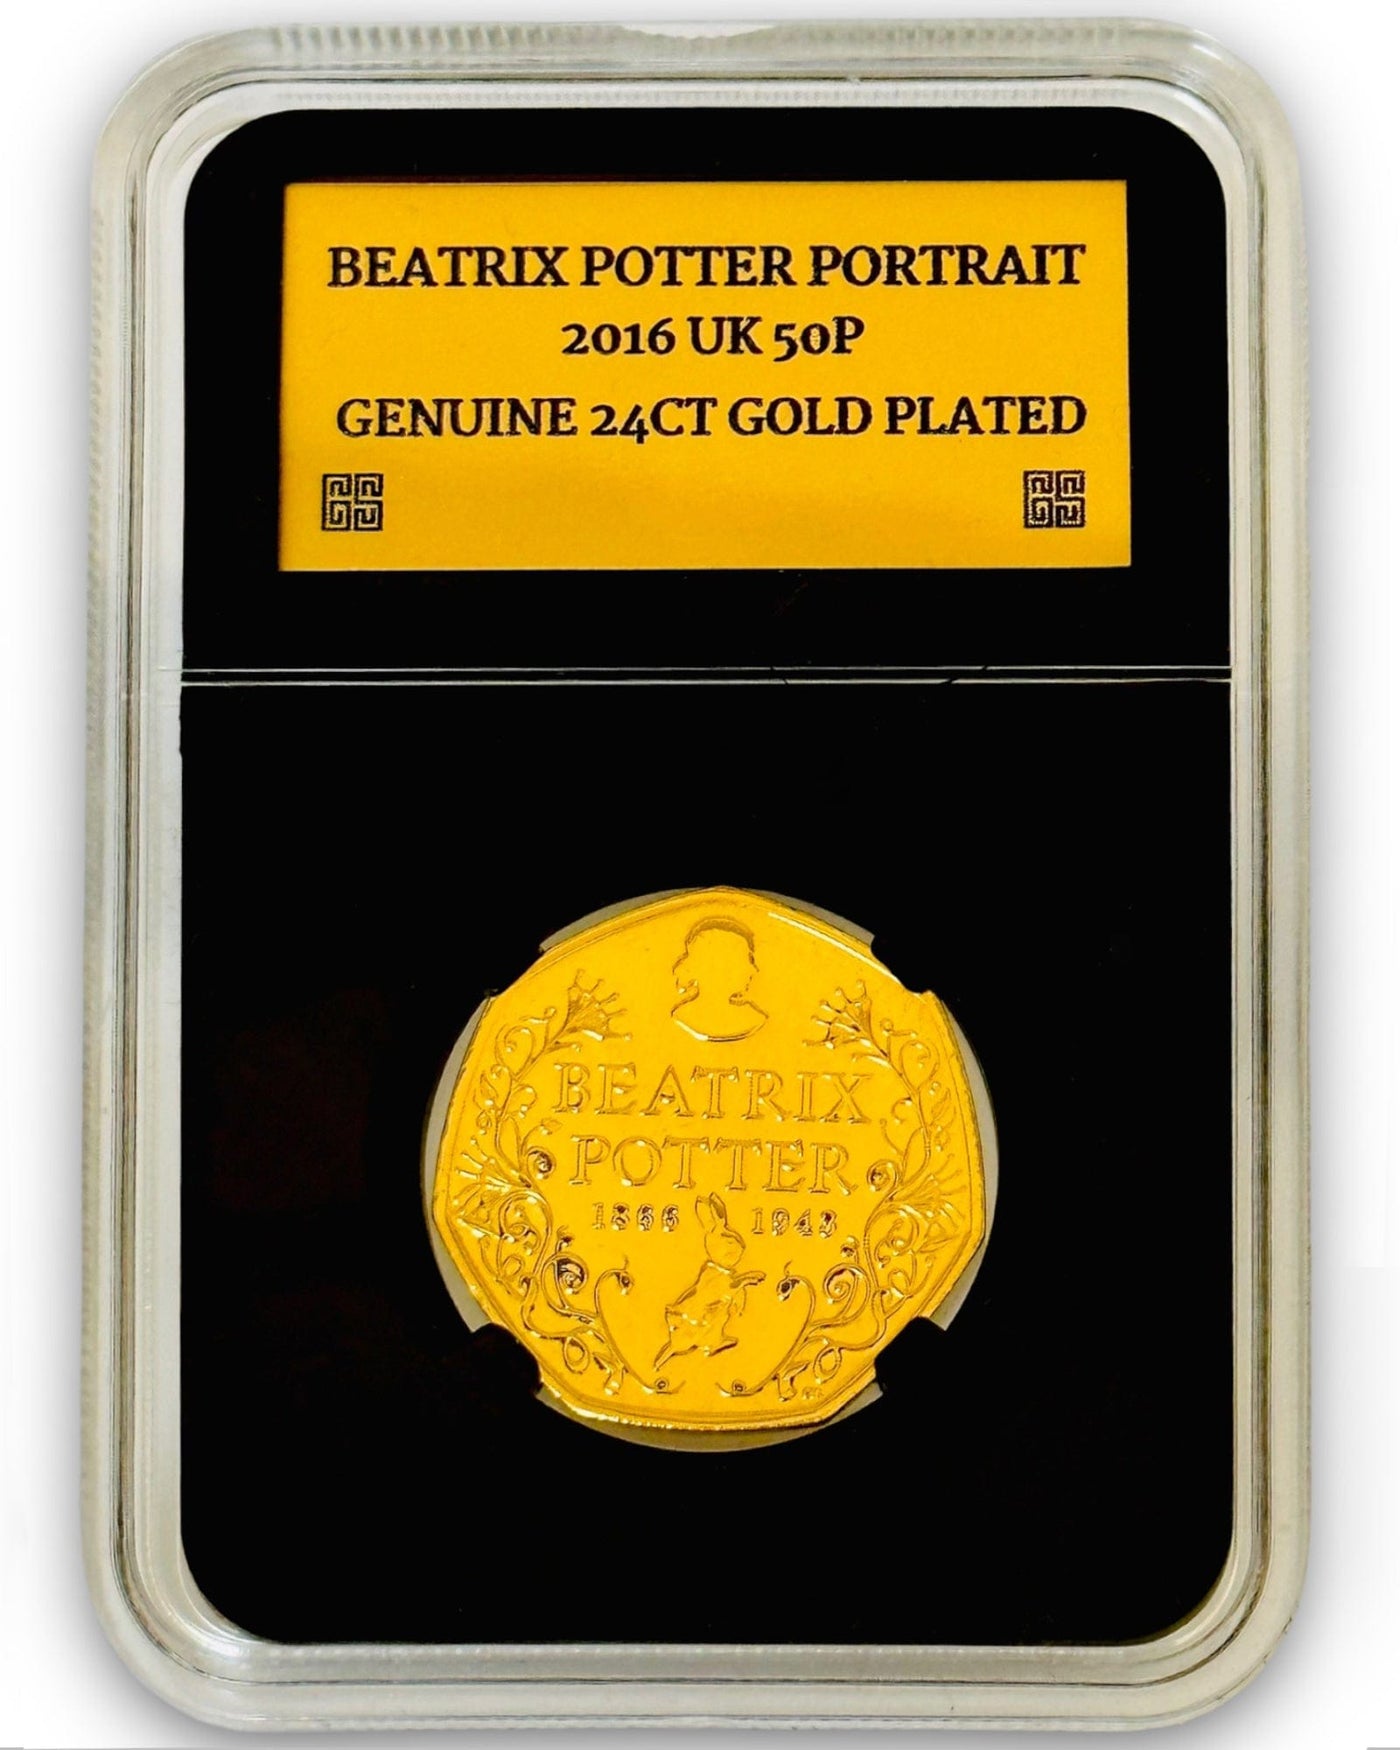 Beatrix Potter Portrait 2016 50p